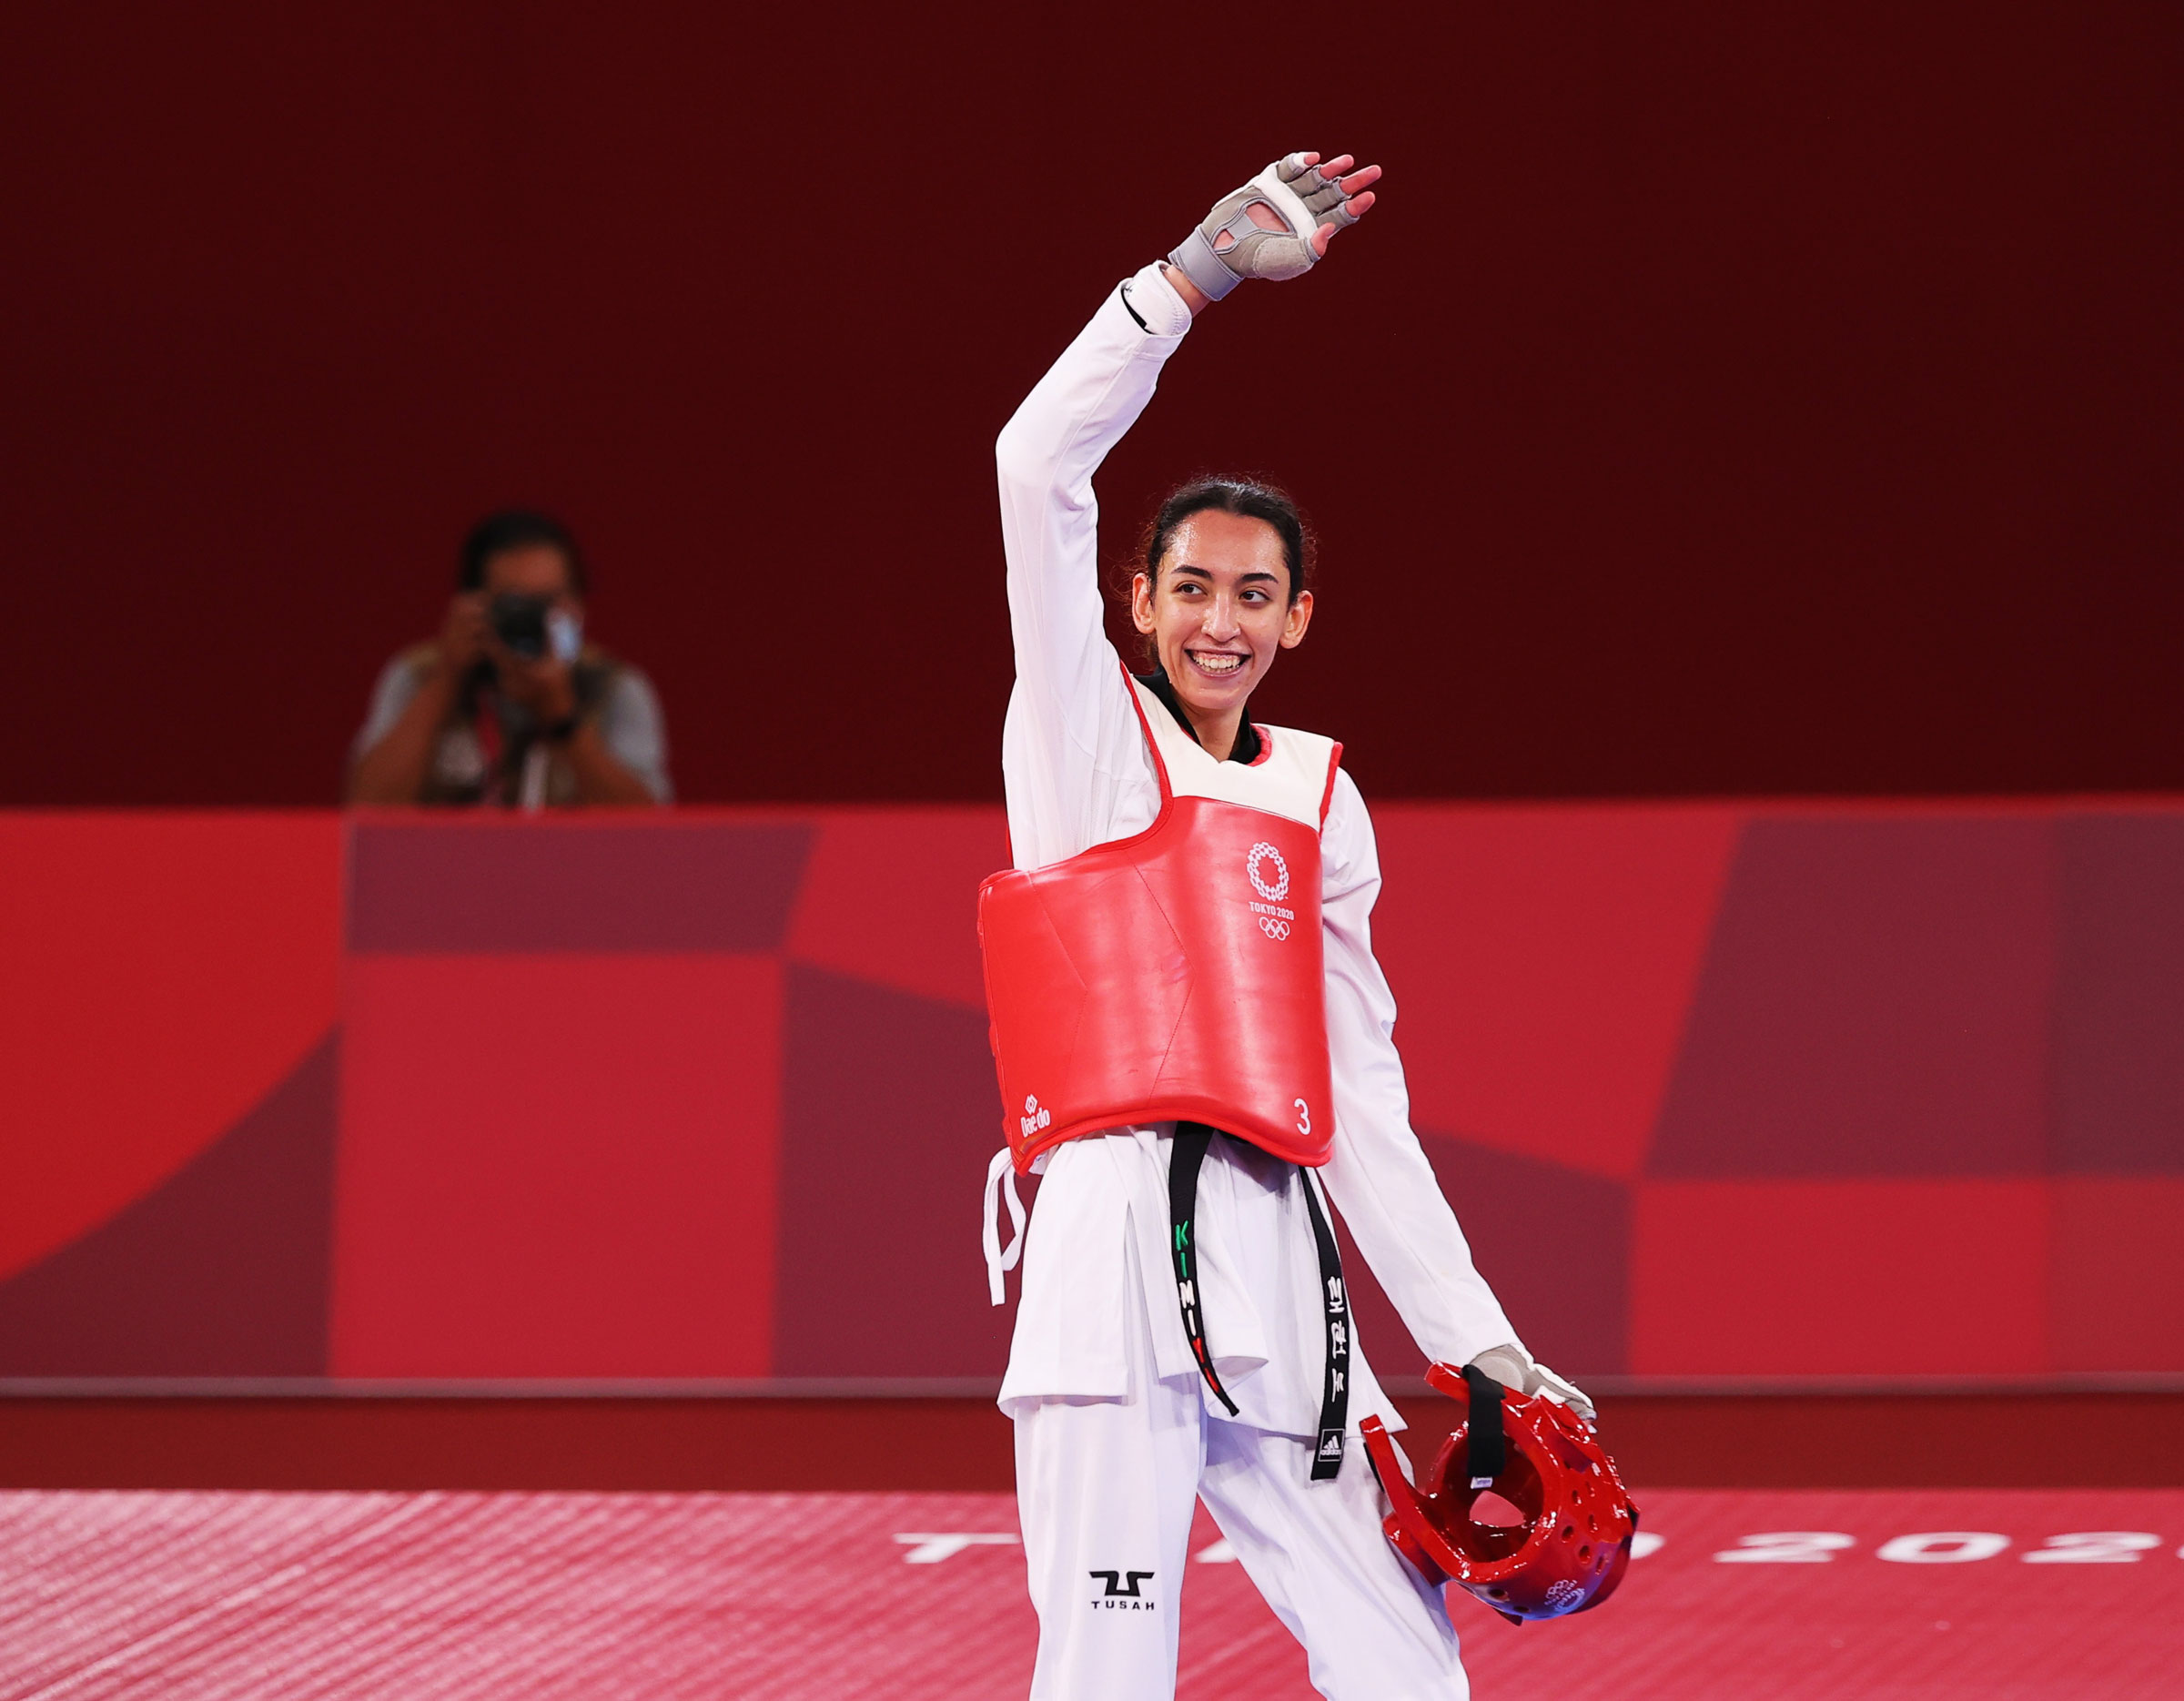 Mülteci Olimpiyat Takımı'ndan Kimia Alizadeh, 25 Temmuz 2021'de Tokyo 2020 Olimpiyatları'nda yarıştıktan sonra kutluyor. (Murad Sezer—Reuters)